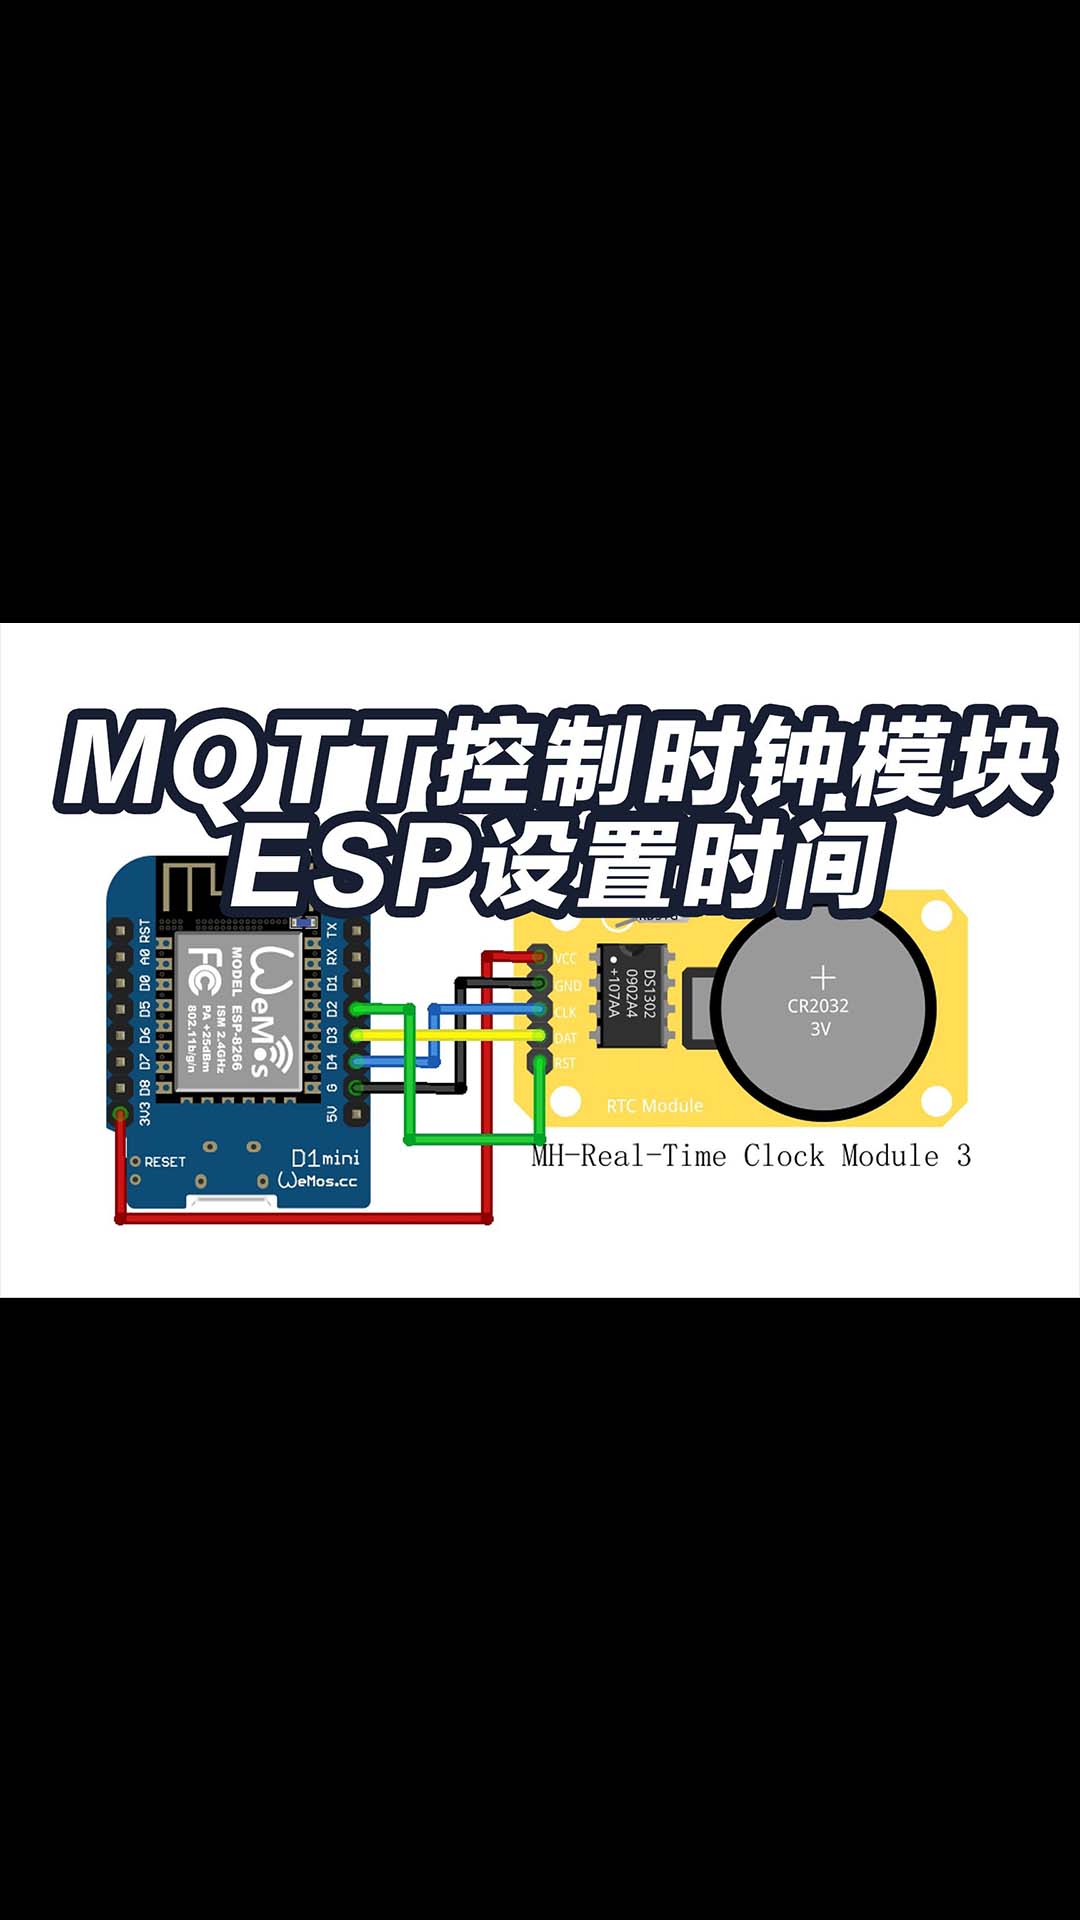 用mqtt控制esp8266设置时钟模块ds1302物联网教程 esp32和arduino都一样